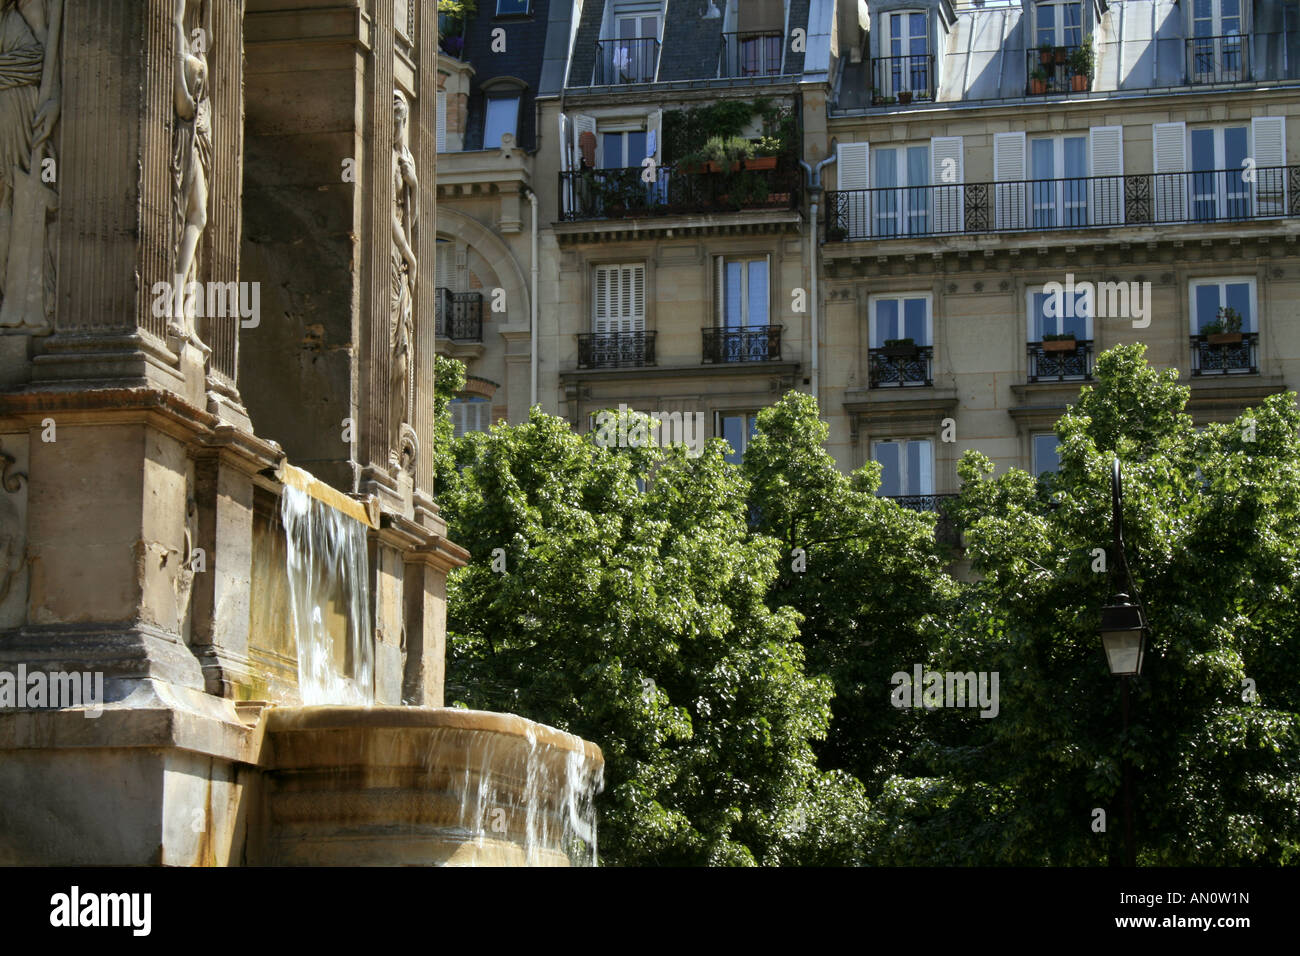 Fontaine des innocents, Paris France Stock Photo